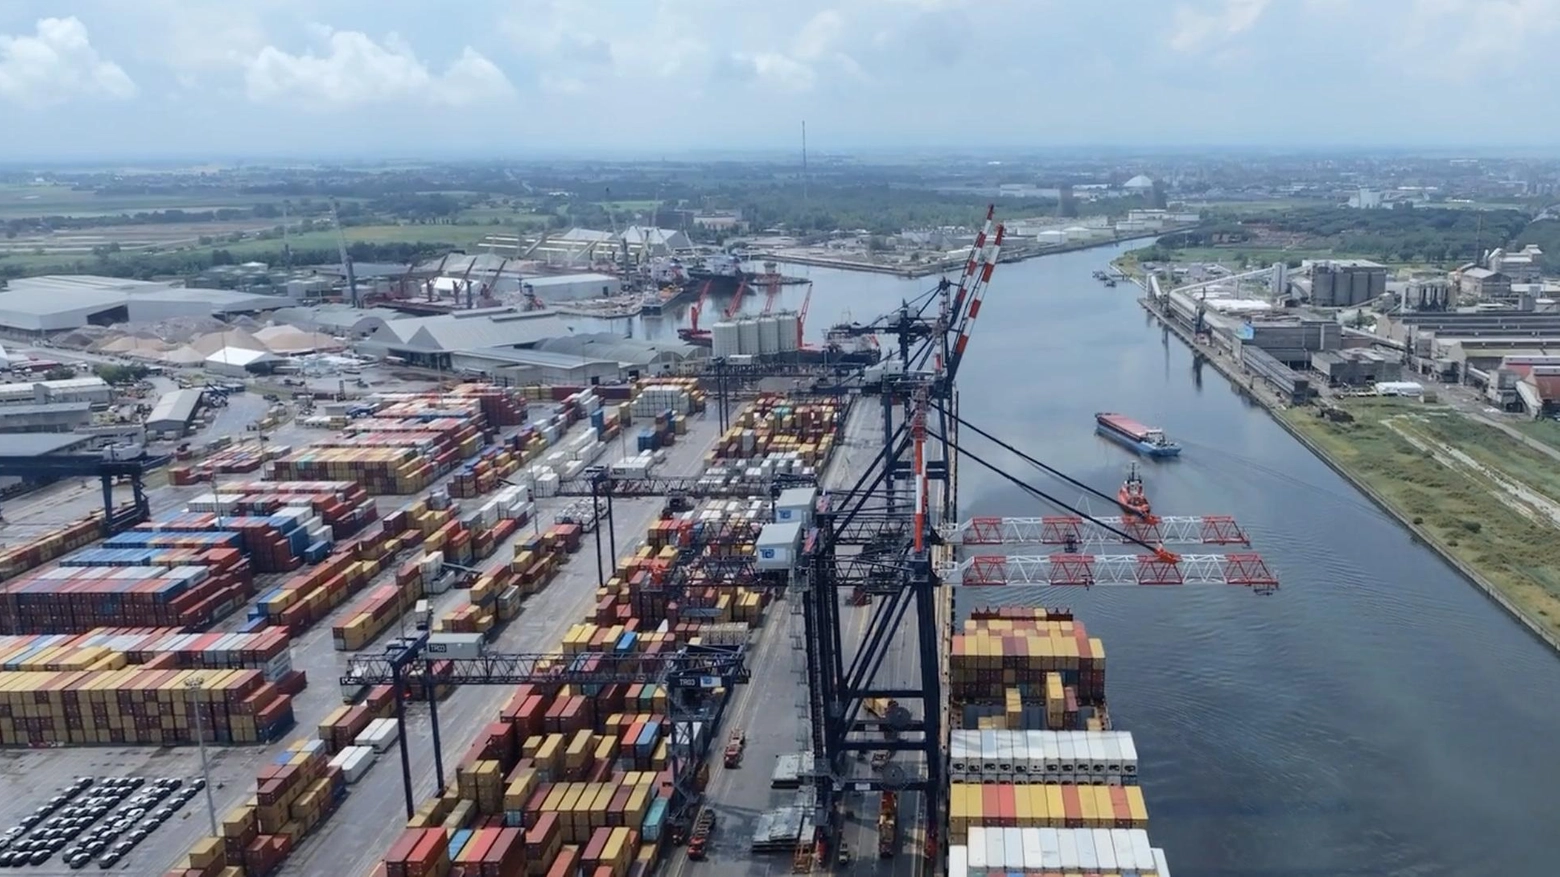 L’81% delle merci in arrivo dall’Est passano per il Canale di Suez. Tajani: “Preoccupati per i nostri porti, siamo passati da 400 a 250 navi al giorno”